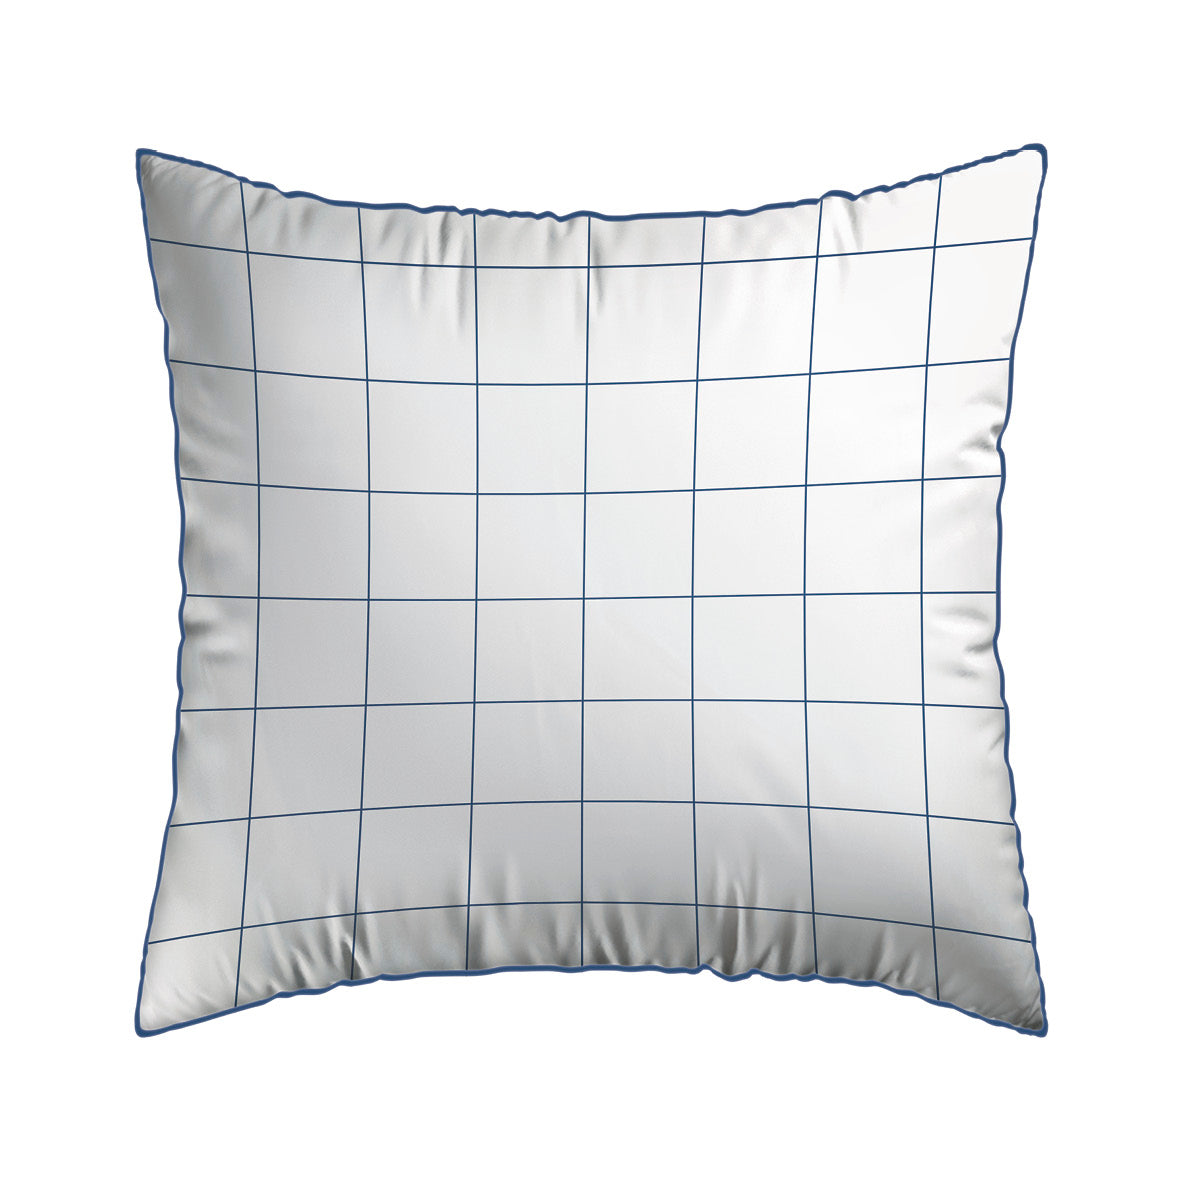 Set of 2 pillowcases cotton satin - Grands carreaux white 63 x 63 cm